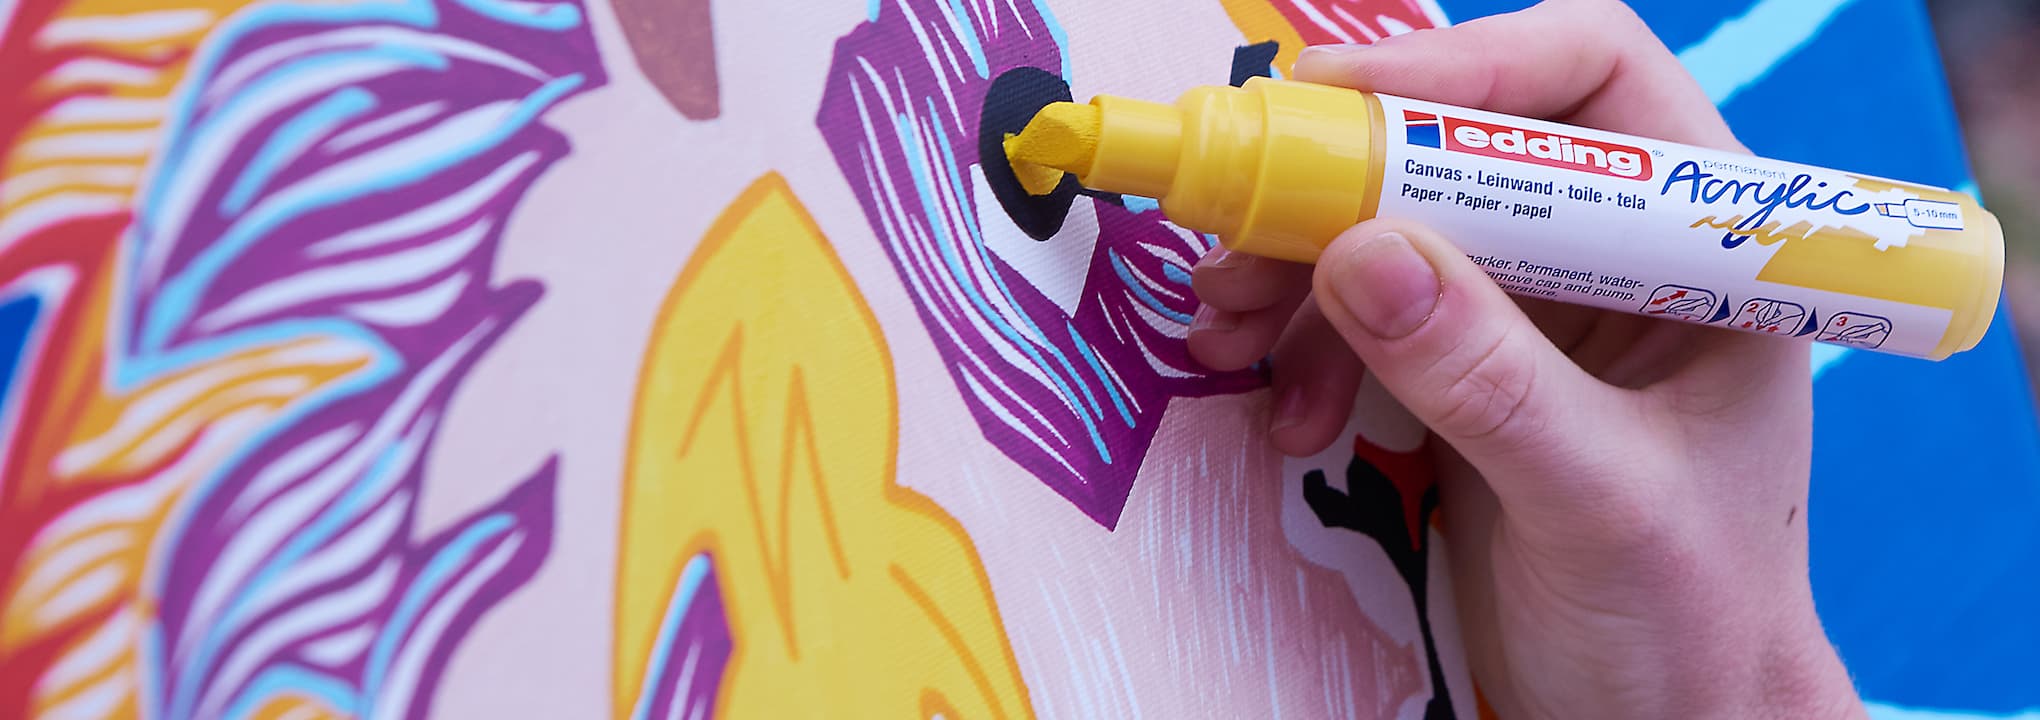 Eine Hand, die einen edding-Acrylfarbmarker hält und einem abstrakten Kunstwerk mit lebendigen Farben und Mustern einen gelben Streifen hinzufügt.